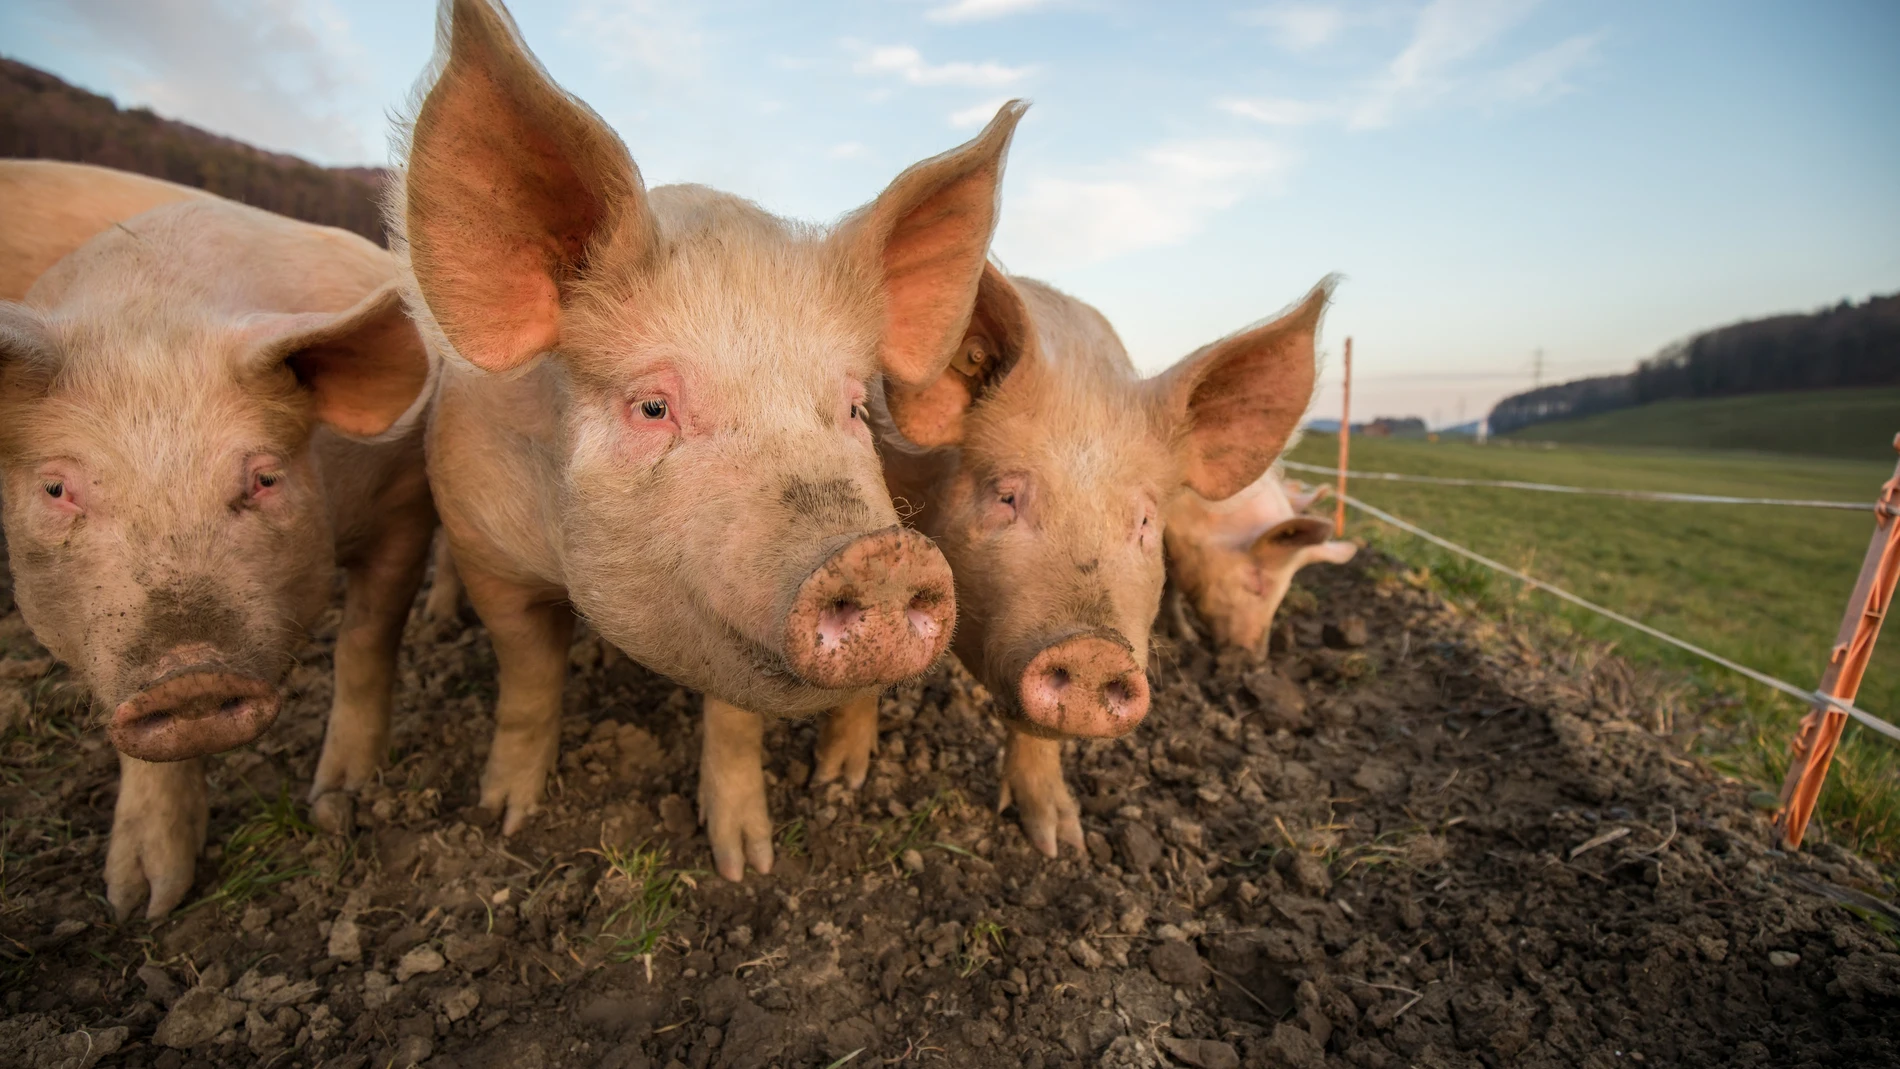 En un estudio realizado en el Centro de Ciencias del Bienestar Animal de la Universidad de Purdue, Indiana (Estados Unidos), cuatro cerdos demostraron la gran capacidad de su especie jugando a un videojuego